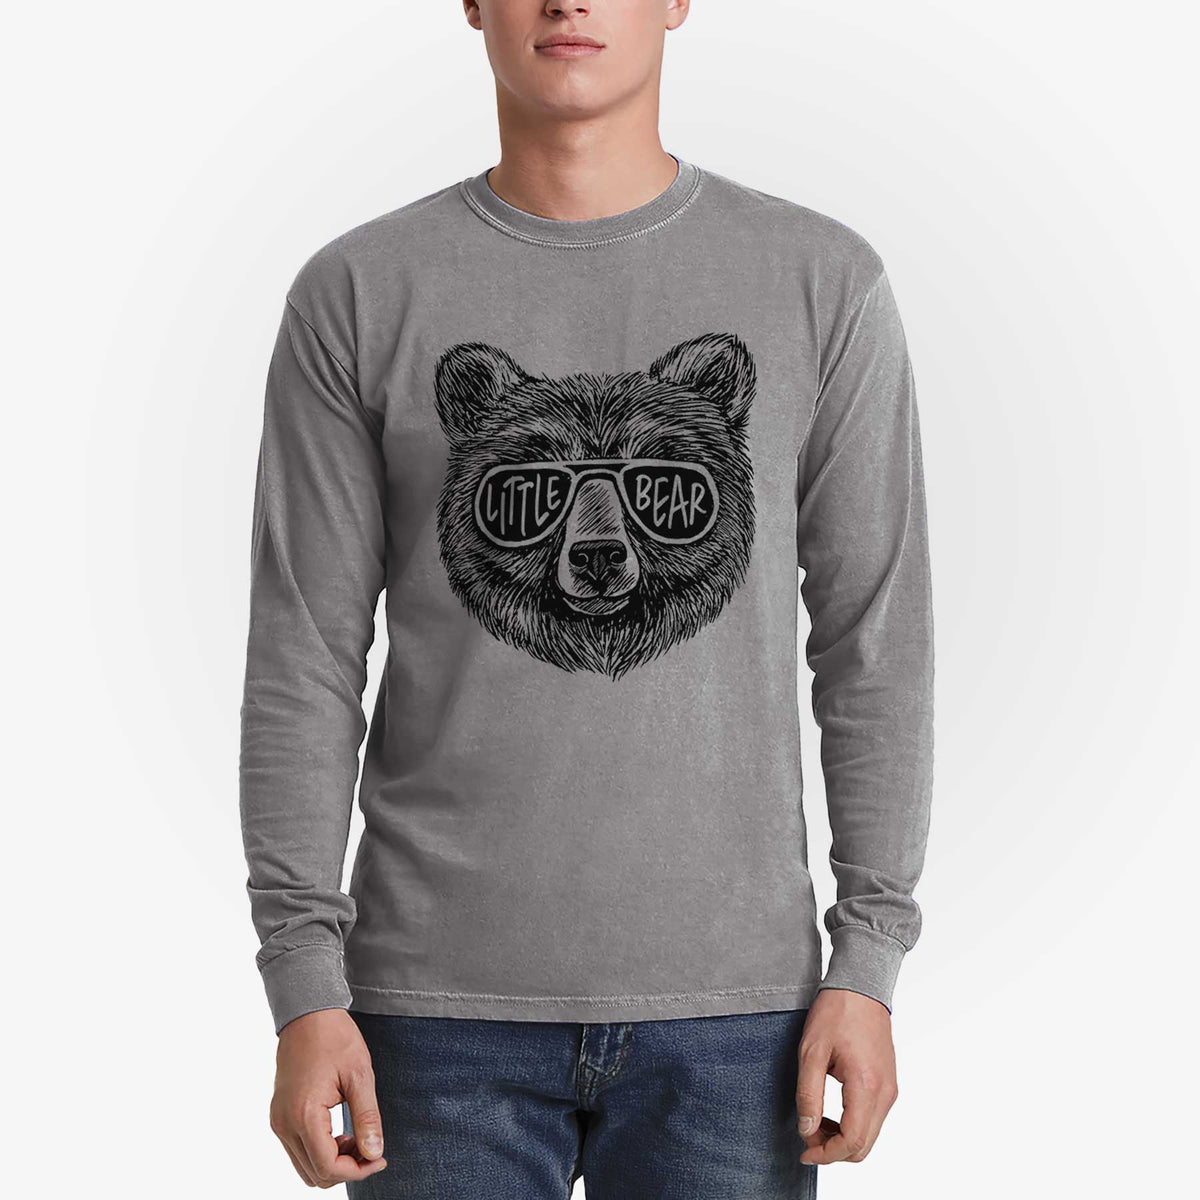 Little Bear - Heavyweight 100% Cotton Long Sleeve